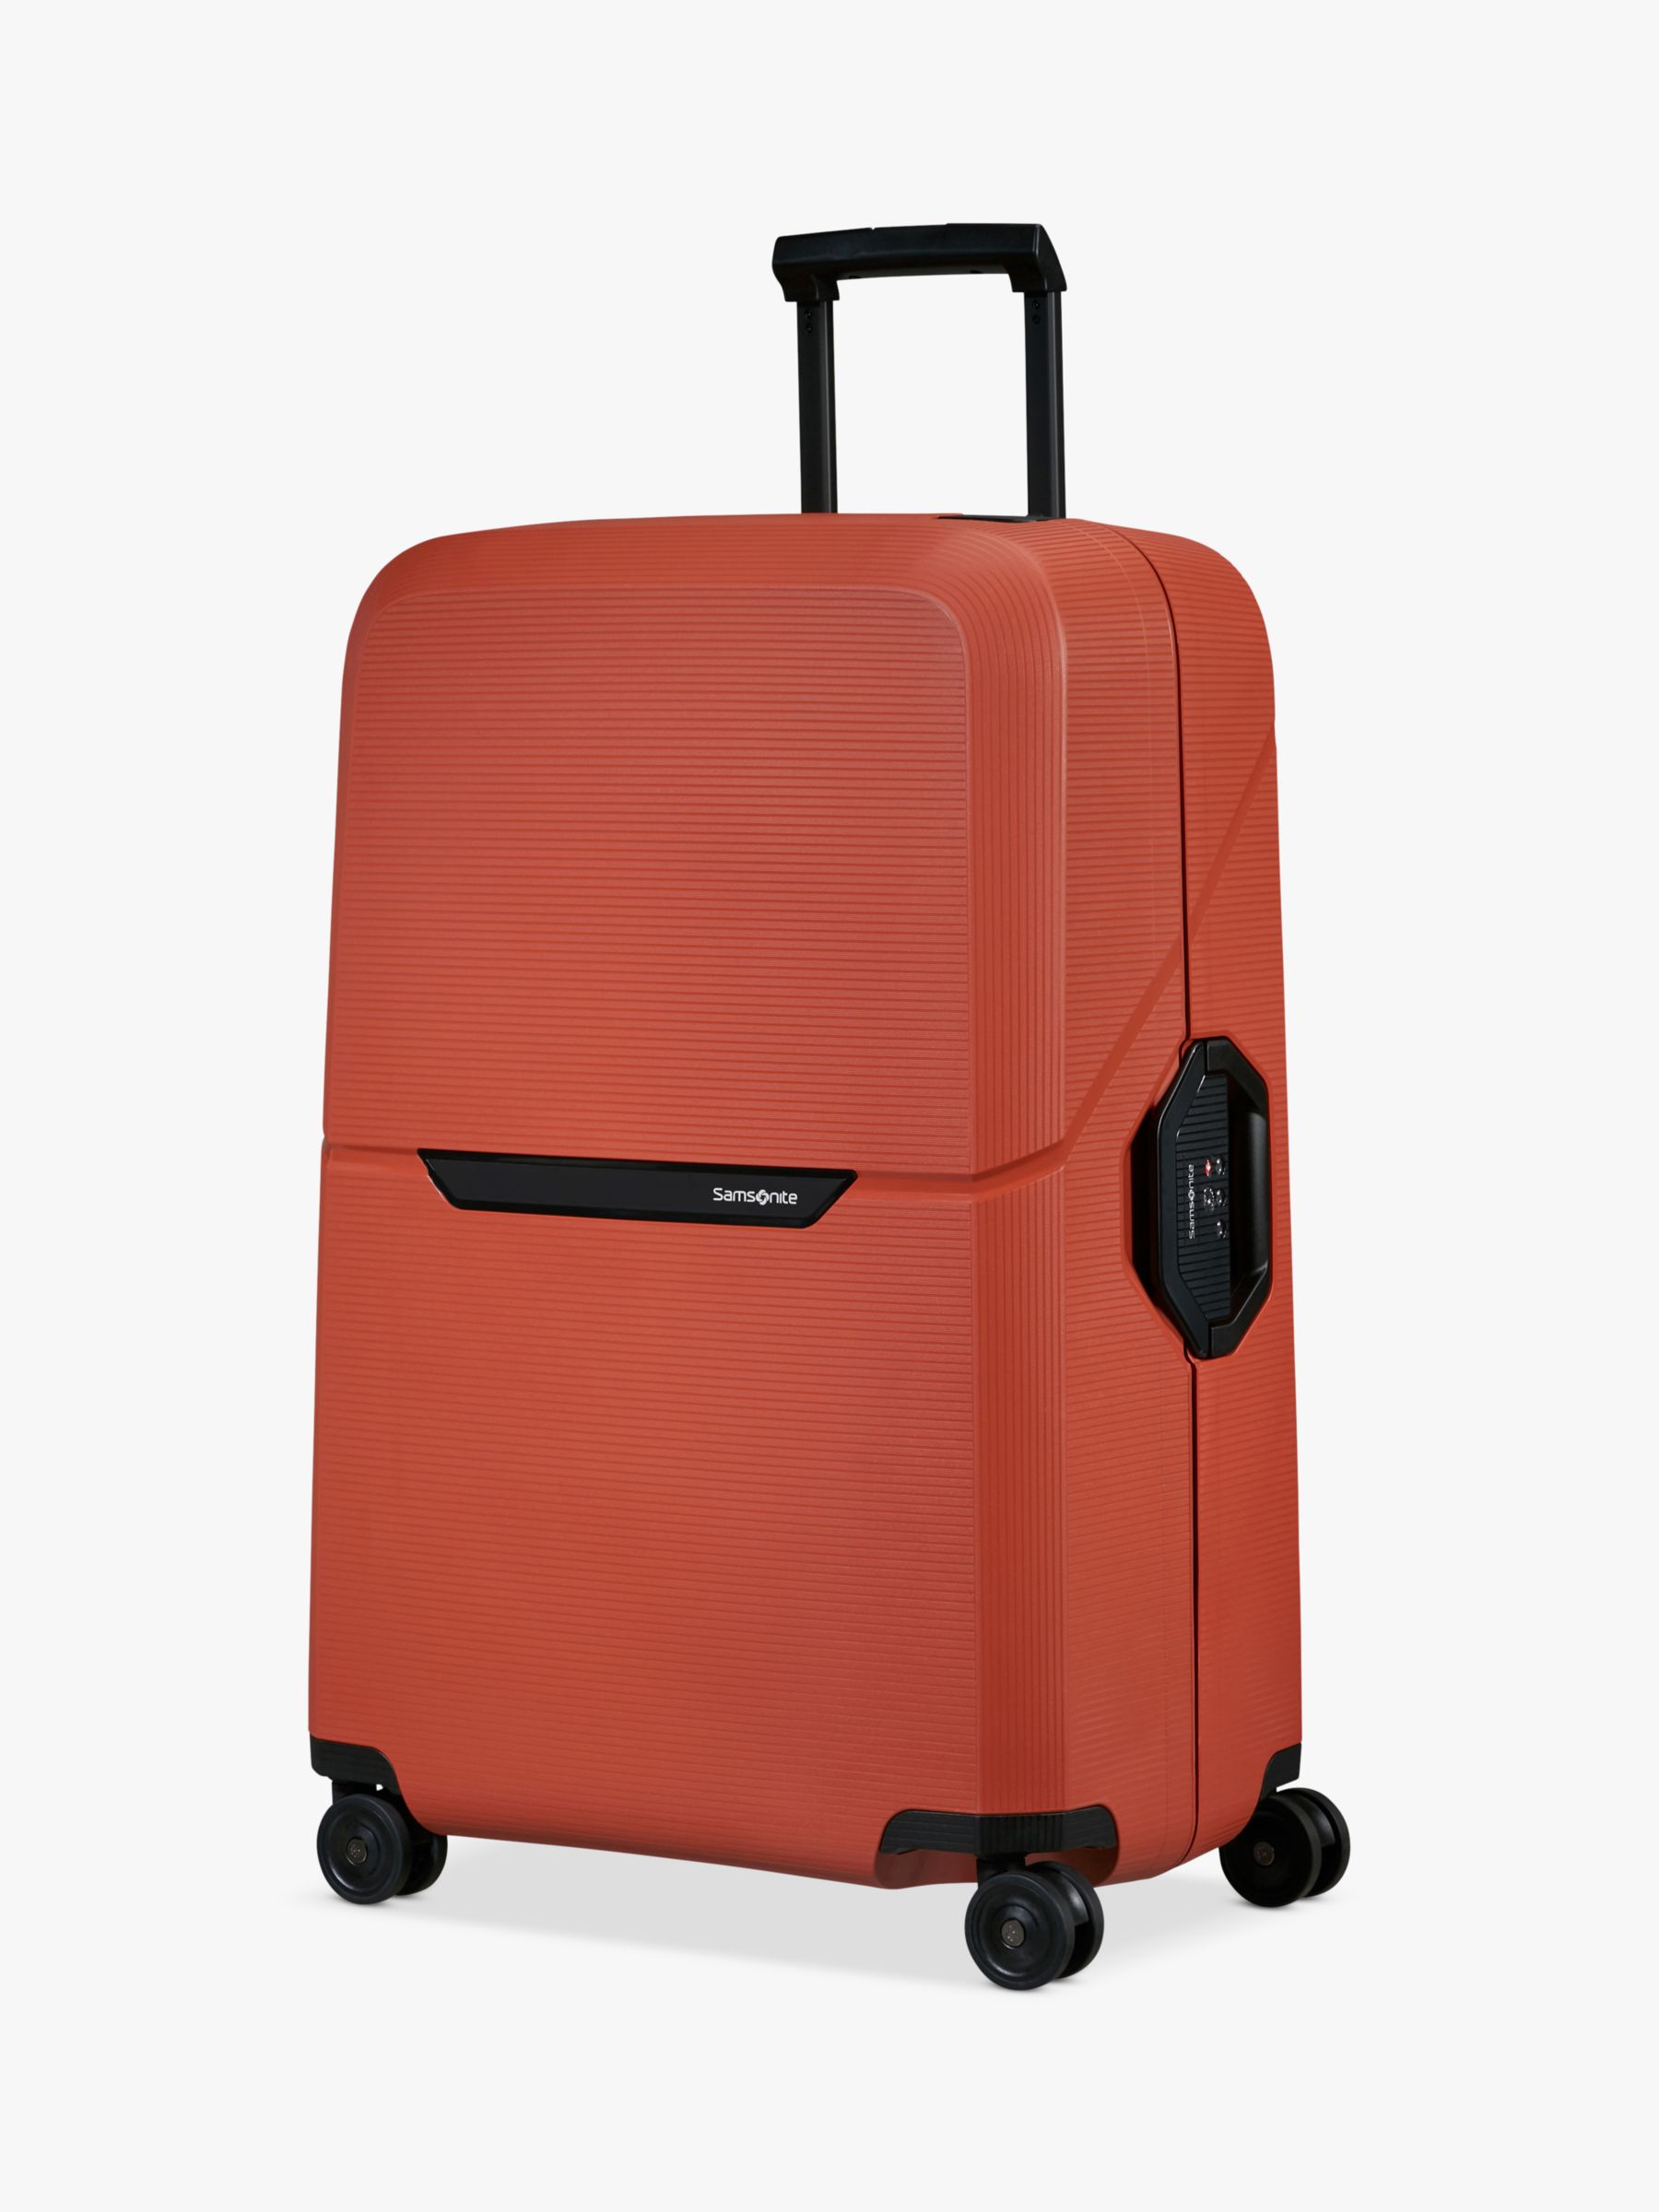 Samsonite Magnum Eco Spinner 75cm 4-Wheel Large Suitcase, Maple Orange